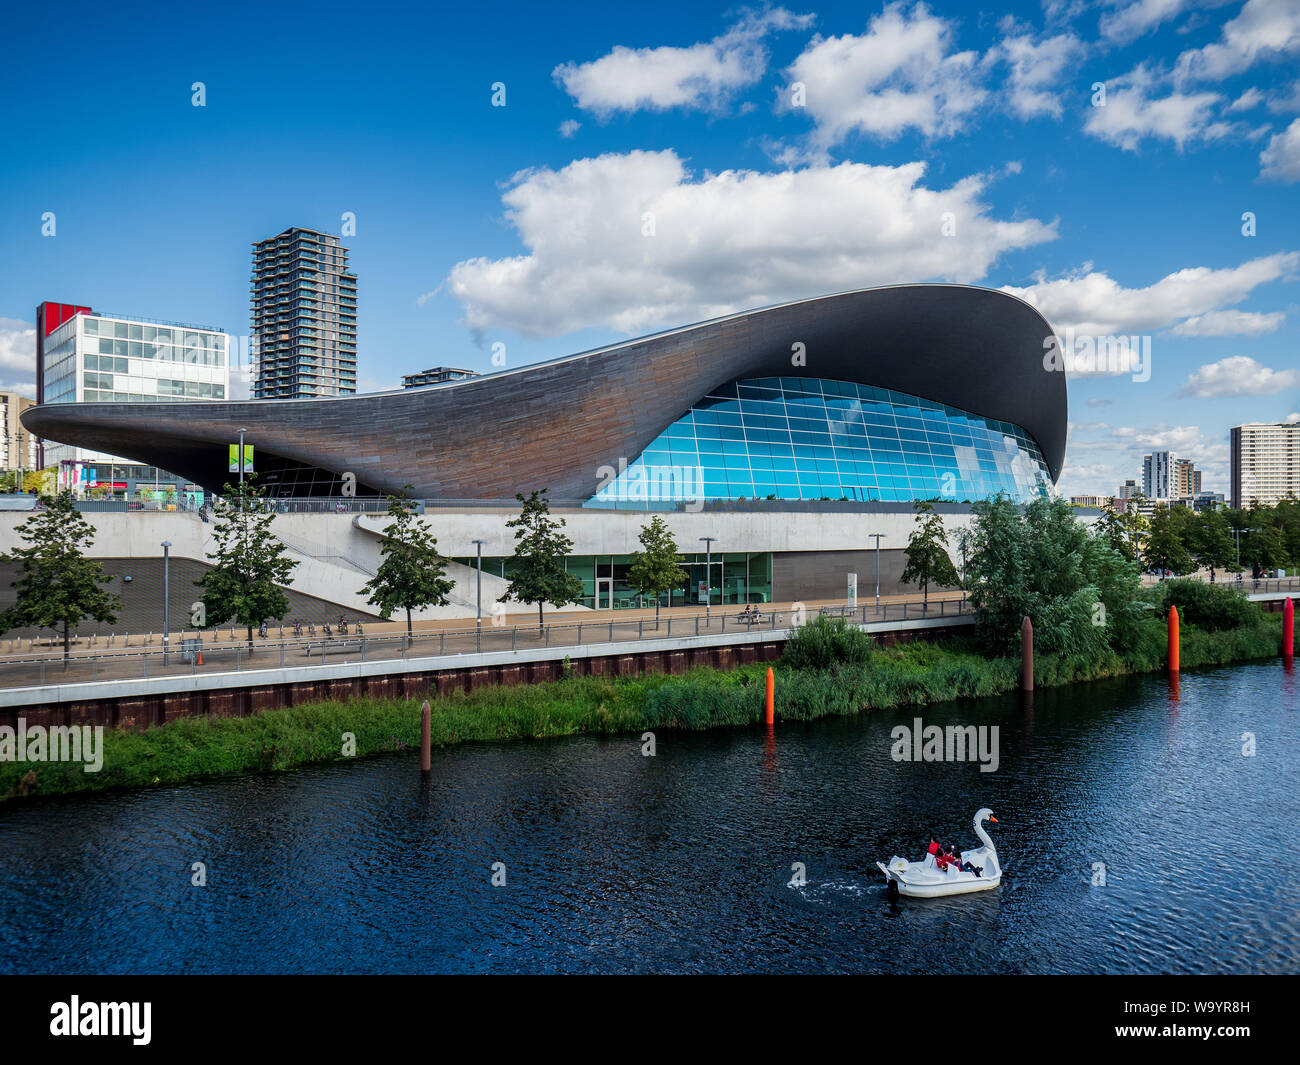 Zaha Hadid London Aquatics Center - Schwimmbäder für die Olympischen Spiele 2012 in London - Zaha Hadid Architects. Abgeschlossen 2011 kostet £269 Millionen. Stockfoto